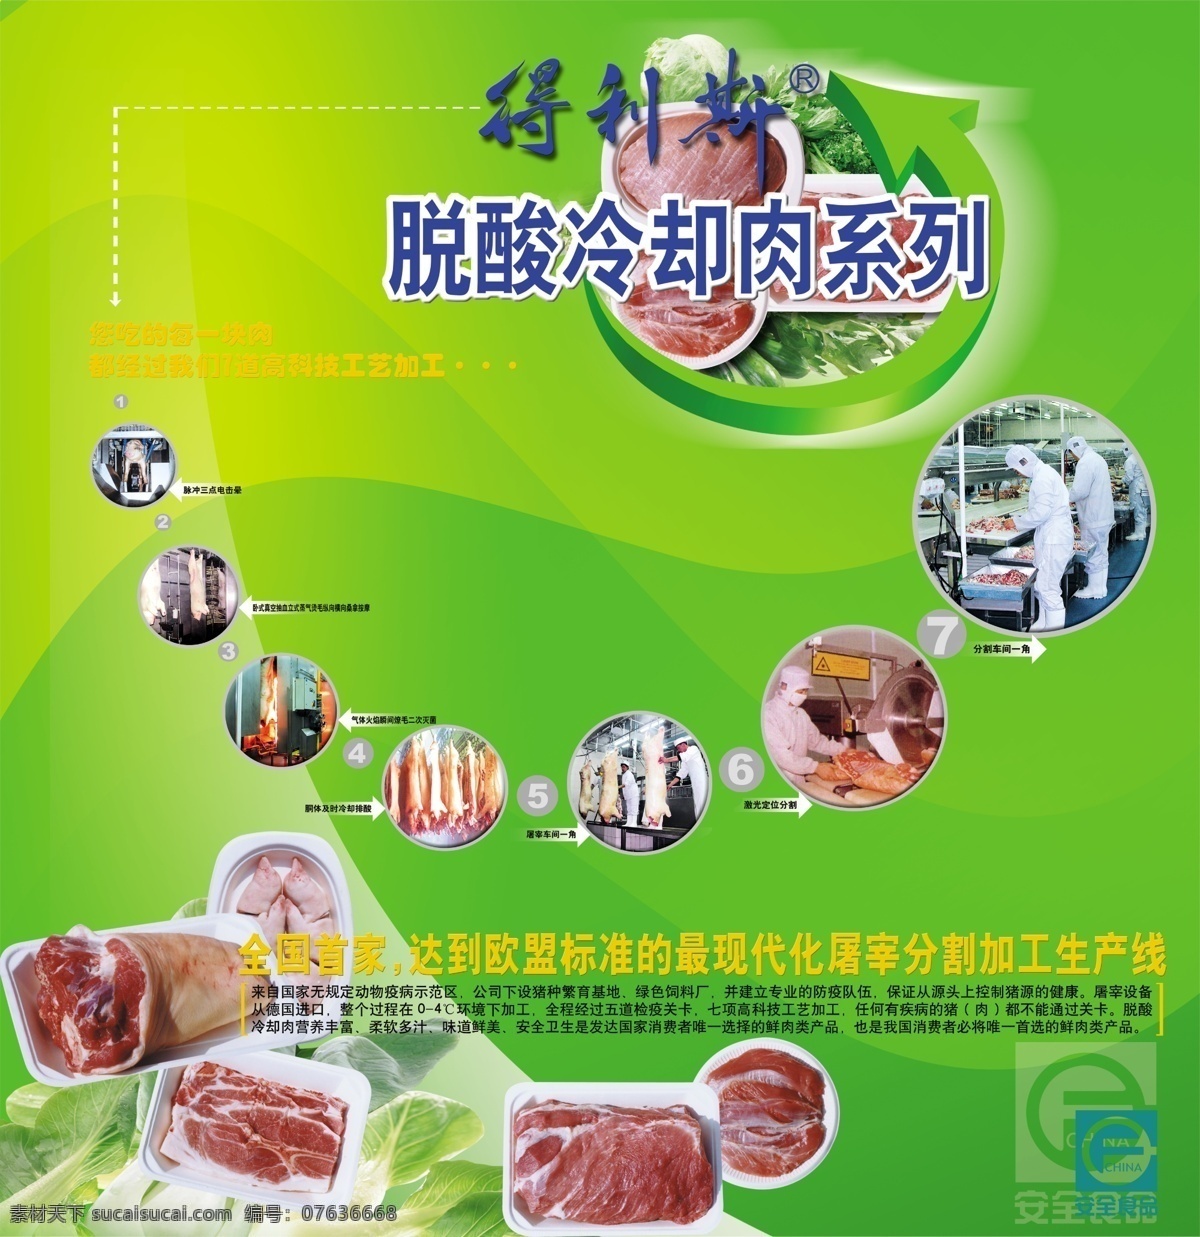 得利斯 得利斯标志 肉 内加工程序 脱酸冷却肉 广告设计模板 源文件